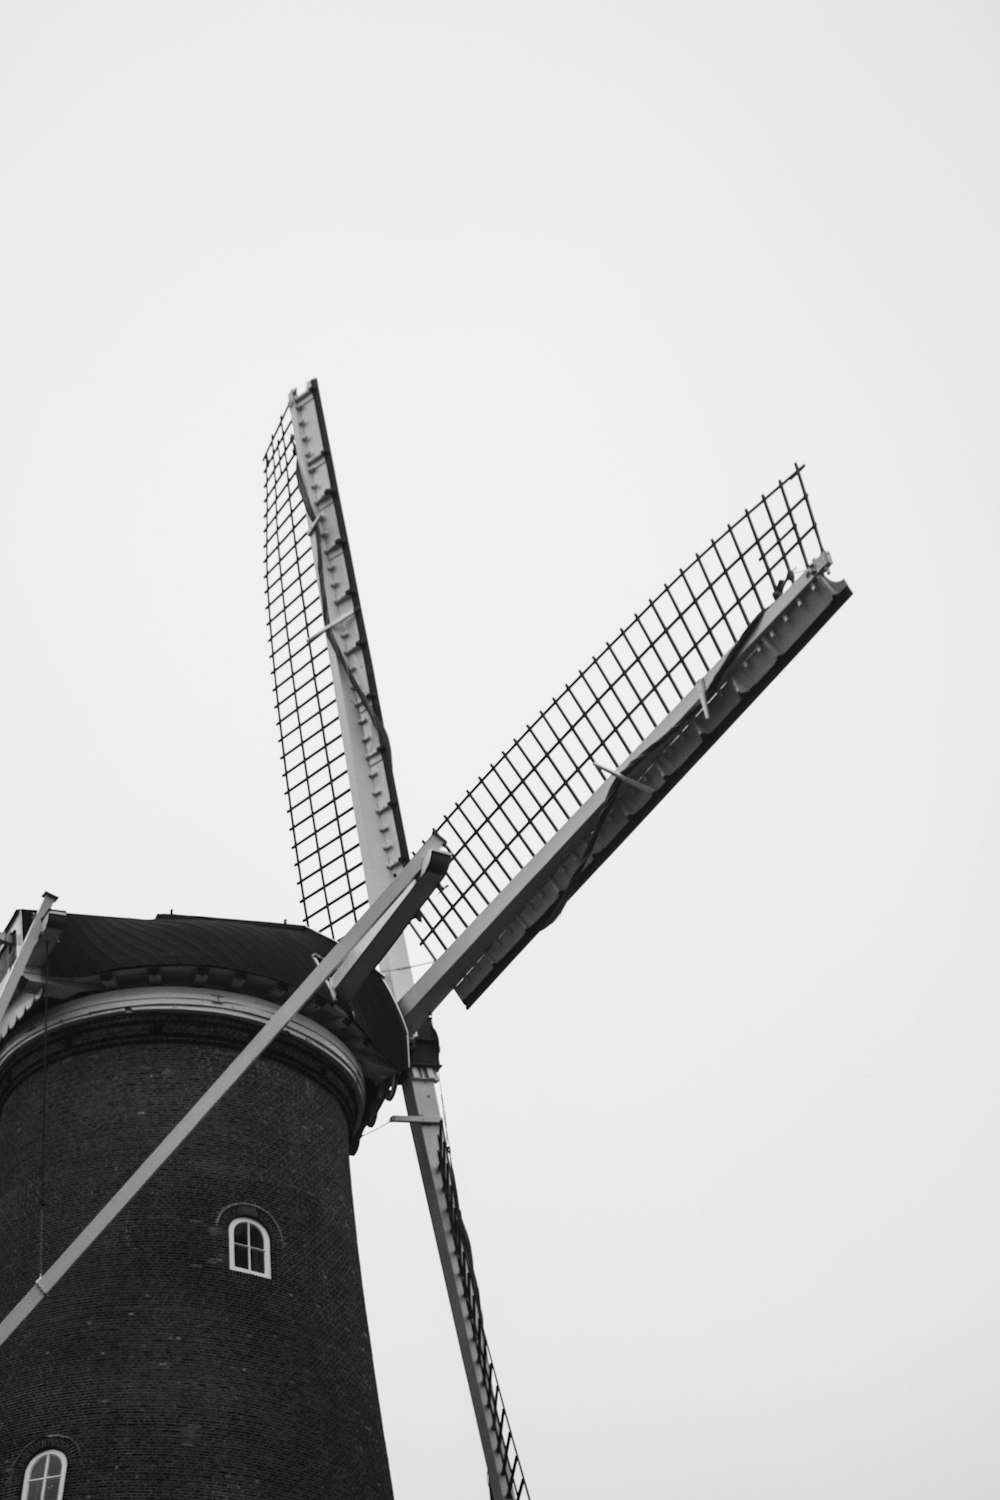 Photo en niveaux de gris d’un moulin à vent